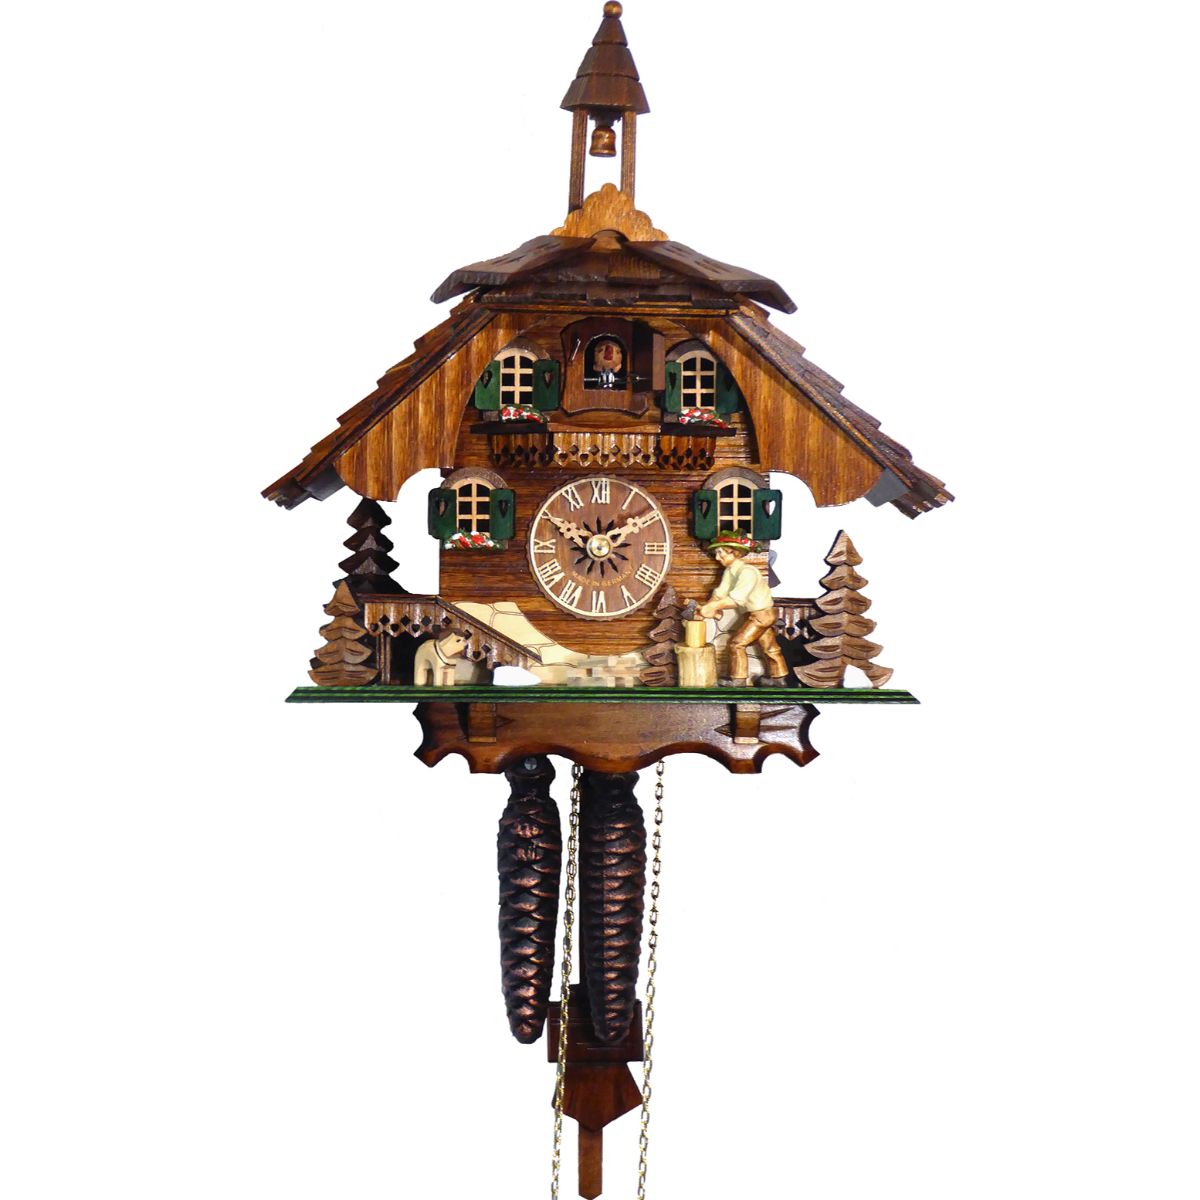 Alexander 12" Engstler Weight-Driven Full Size Cuckoo Wall Clock